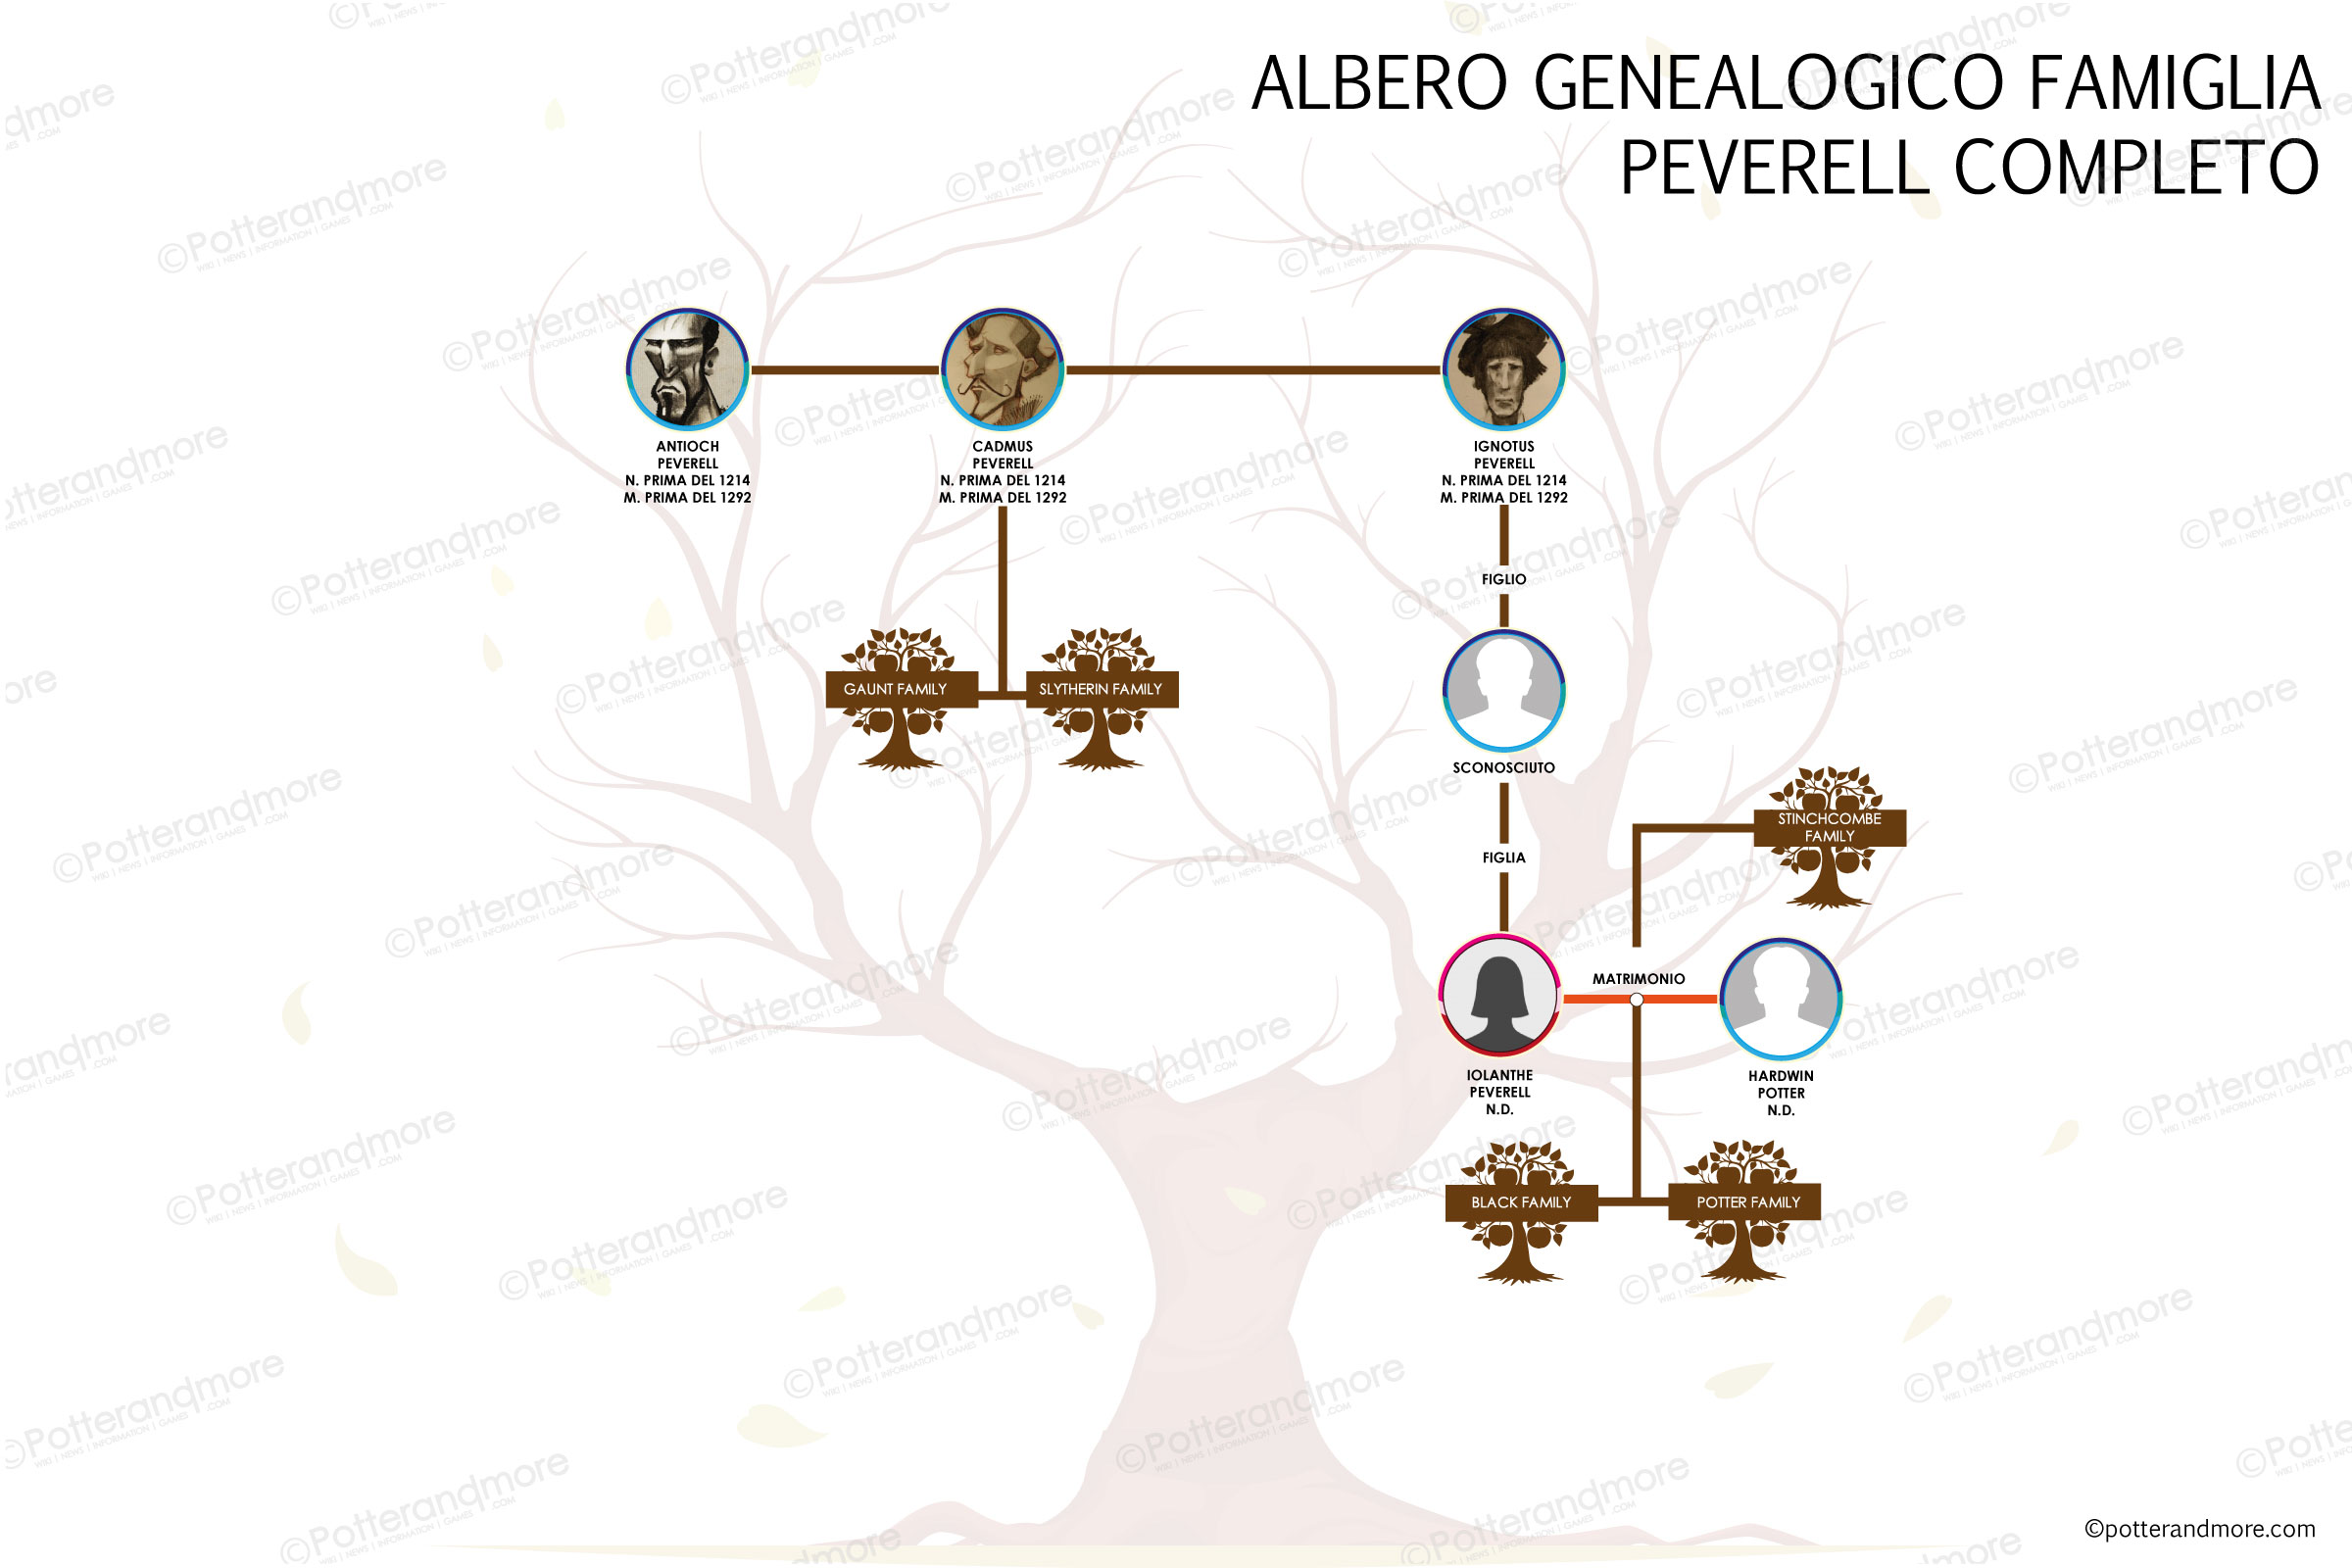 Albero Genealogico famiglia Peverell